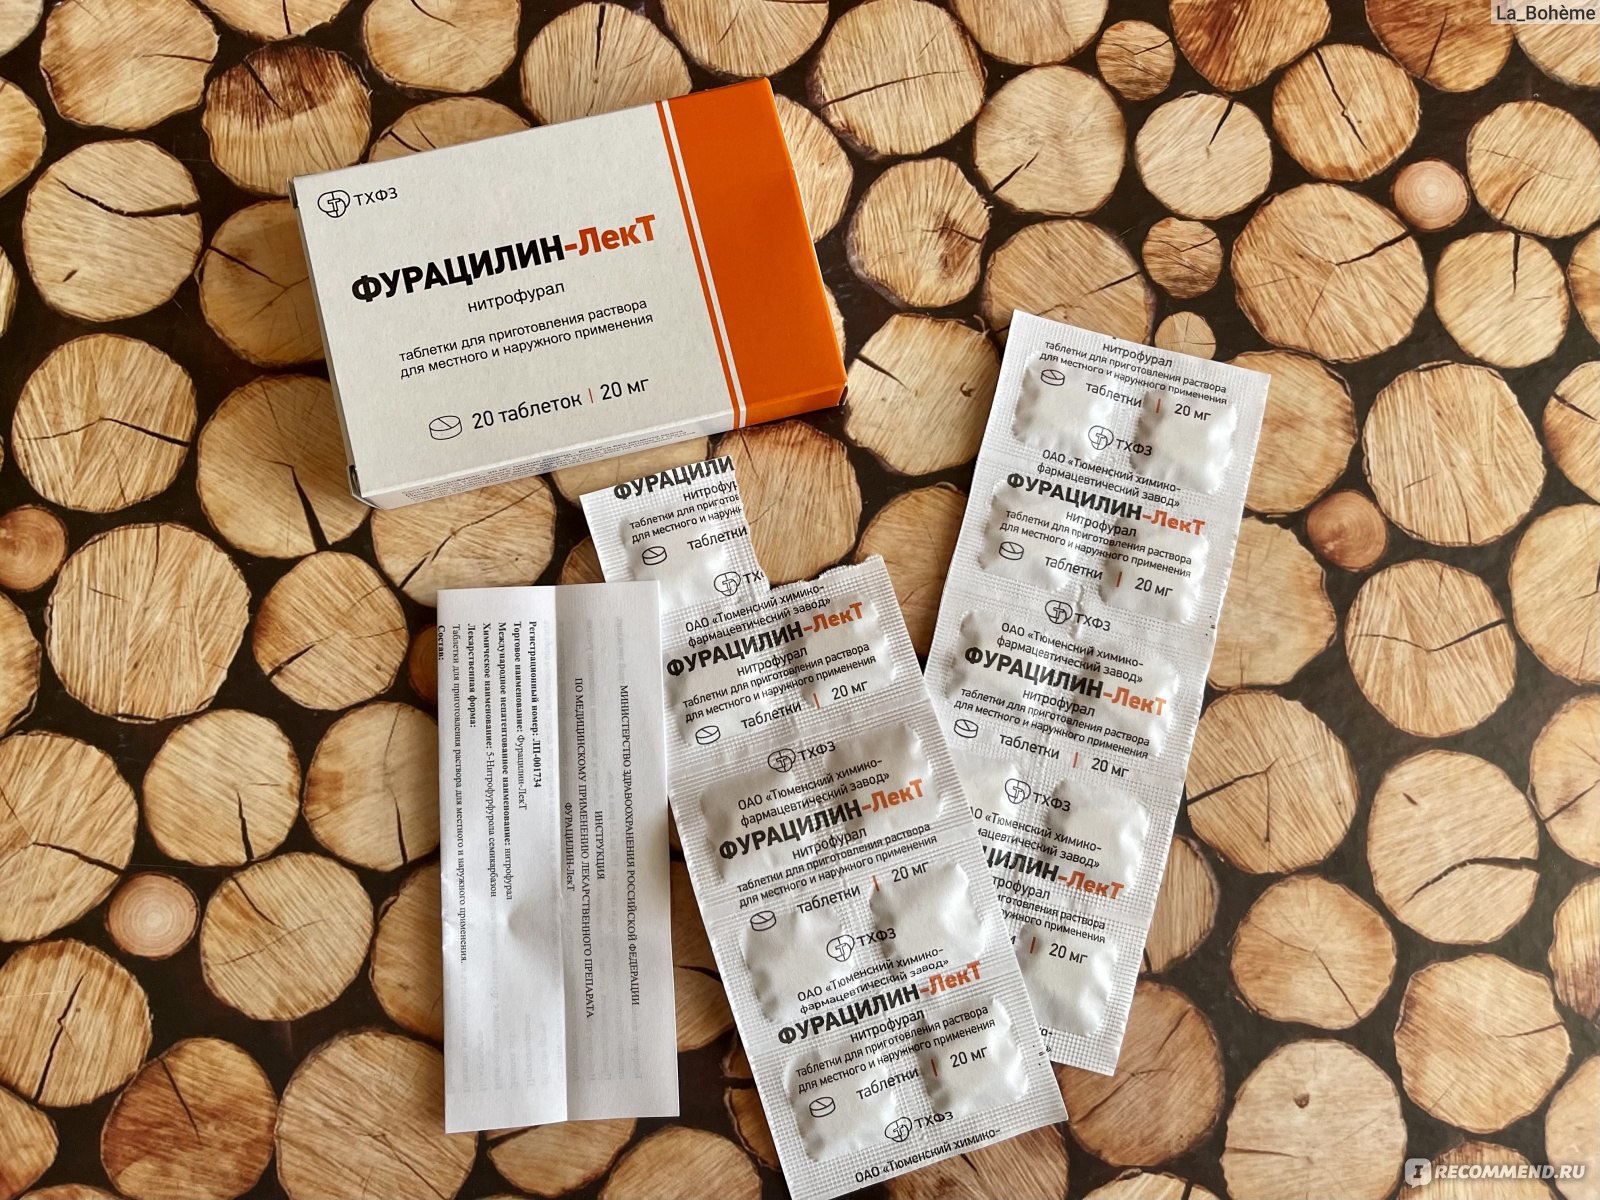 Таблетки ТХФЗ Фурацилин-Лект - «Самые неудобные растворимые таблетки .